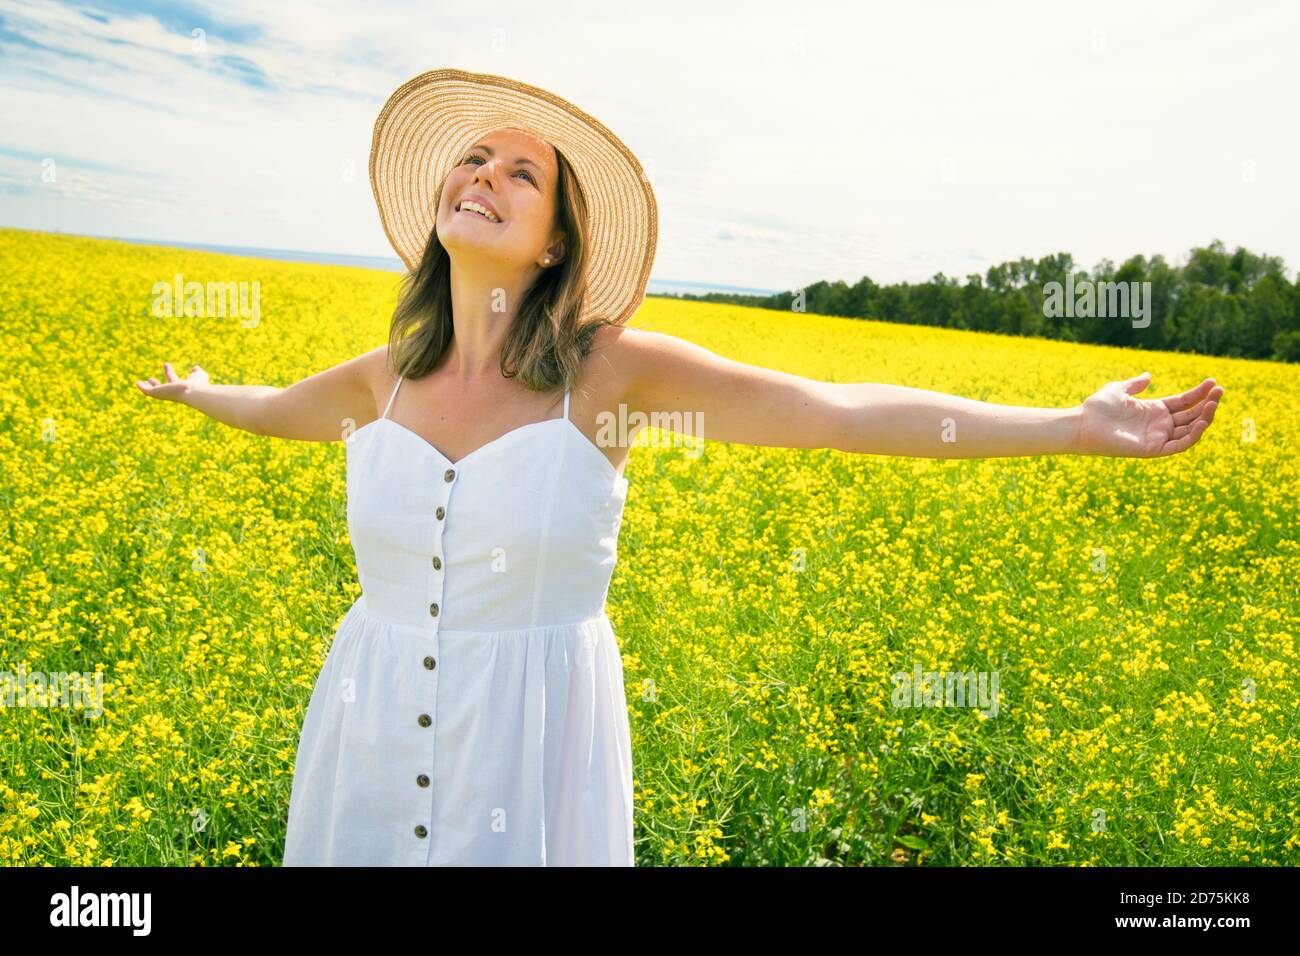 belle jeune femme heureuse sur champ de colza en fleur Banque D'Images